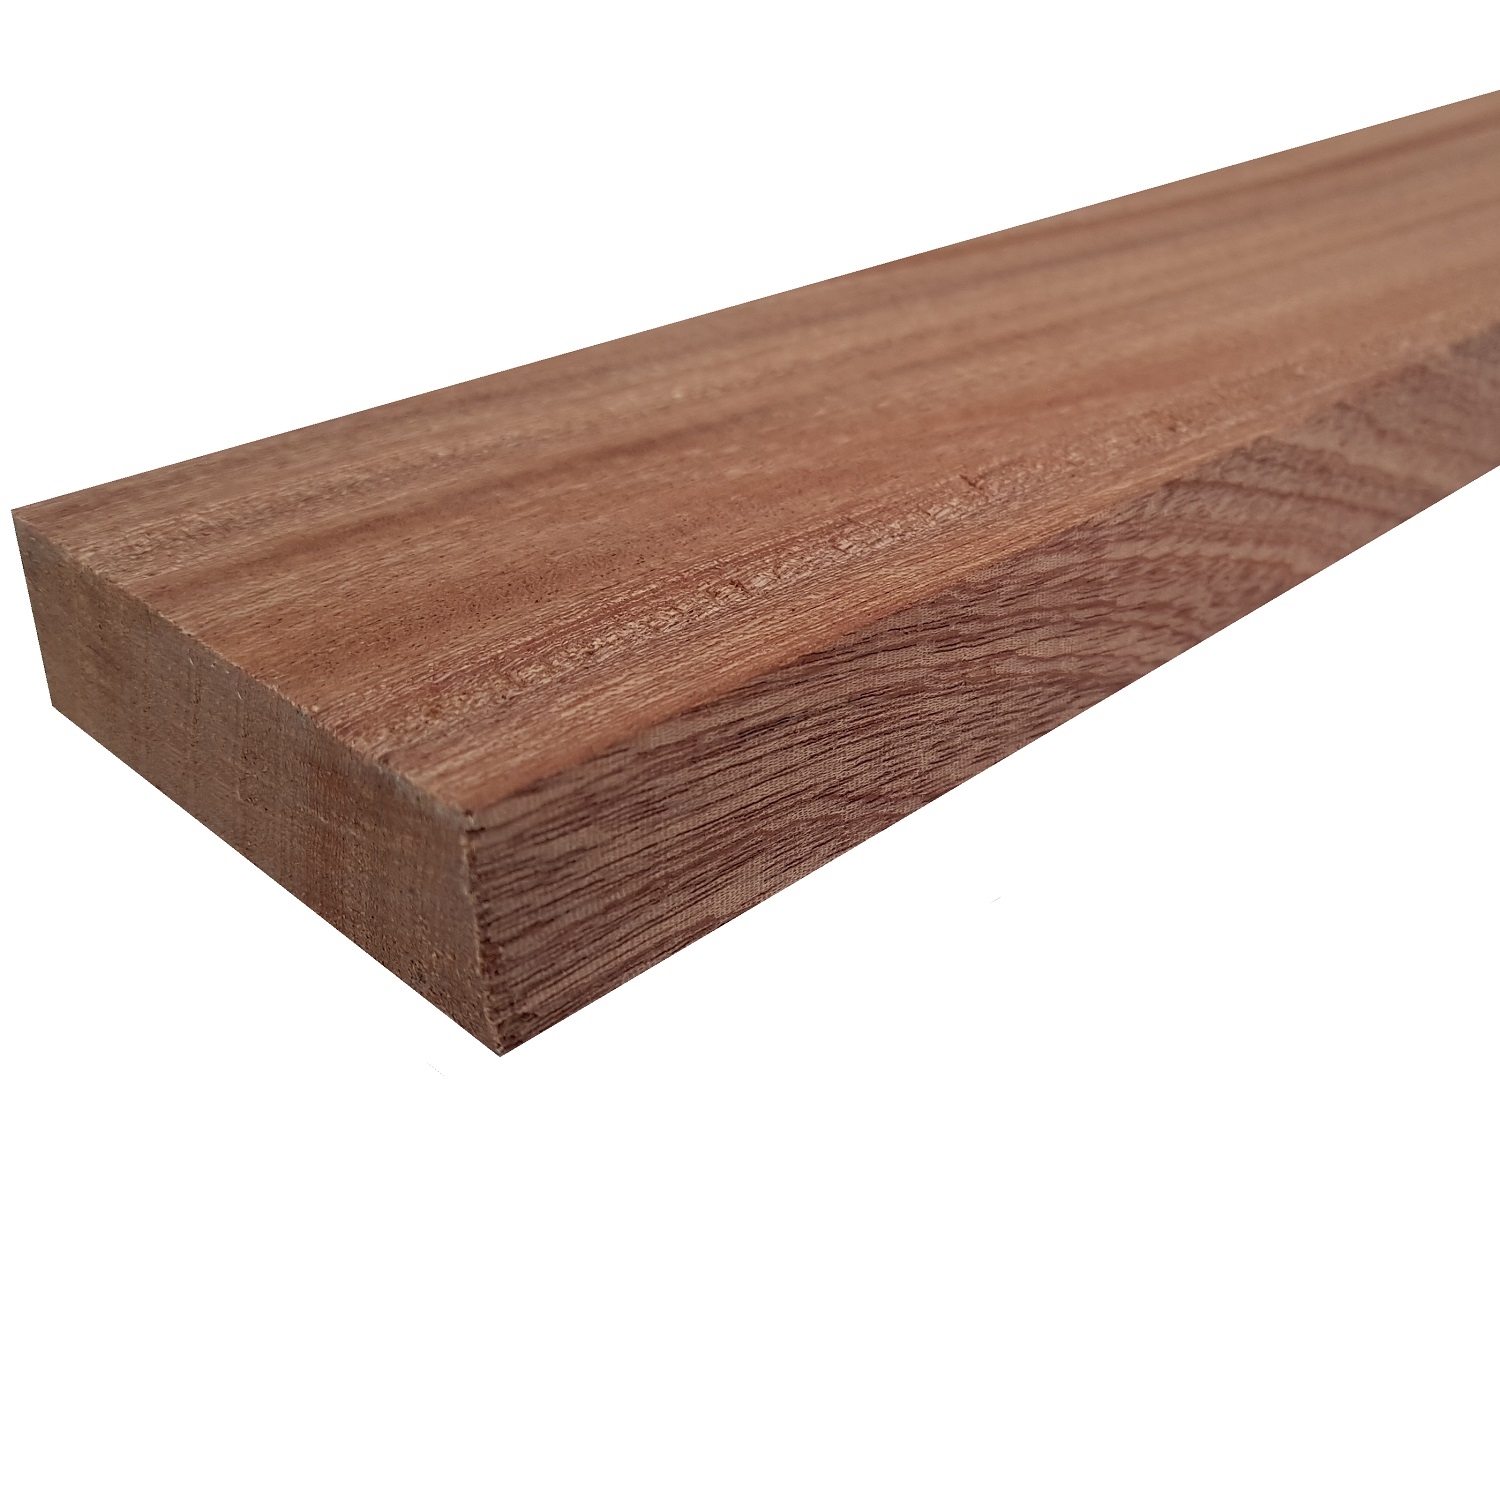 Tavola legno di Mogano Refilato Piallato mm 21 x 170 x 3000